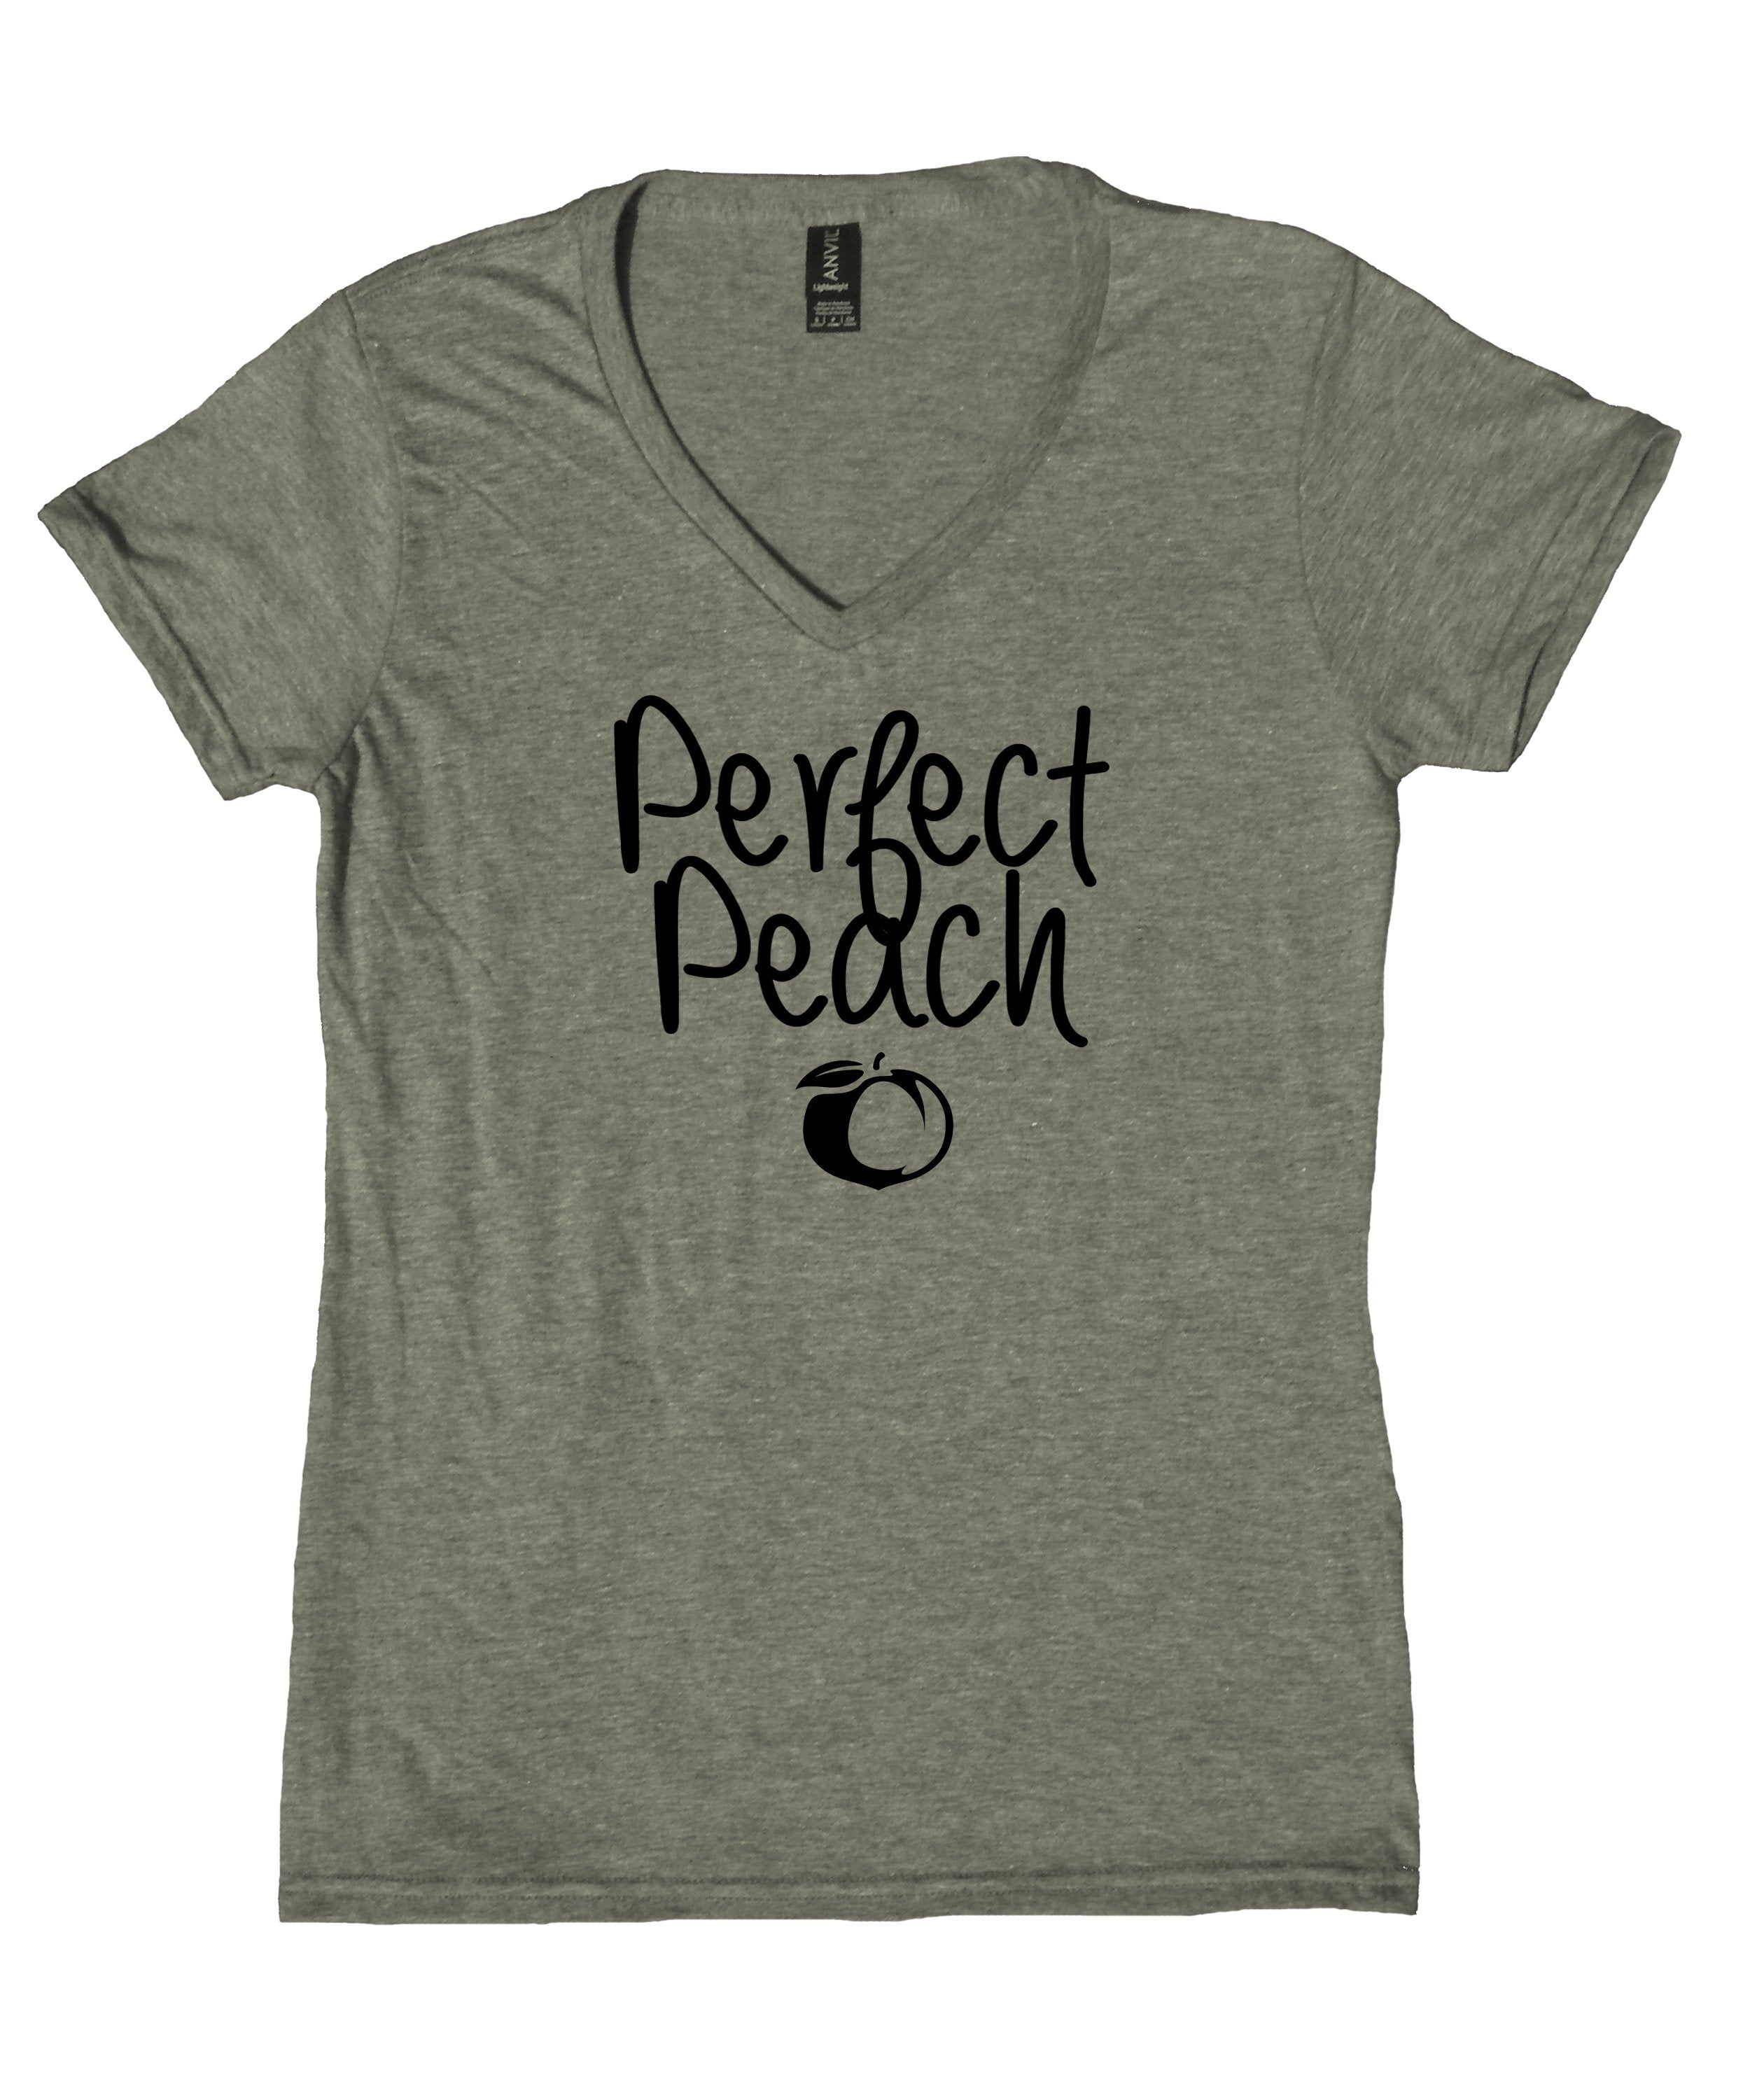 Southern Peach Shirt Perfect Peach Georgia Atlanta Girl South V-